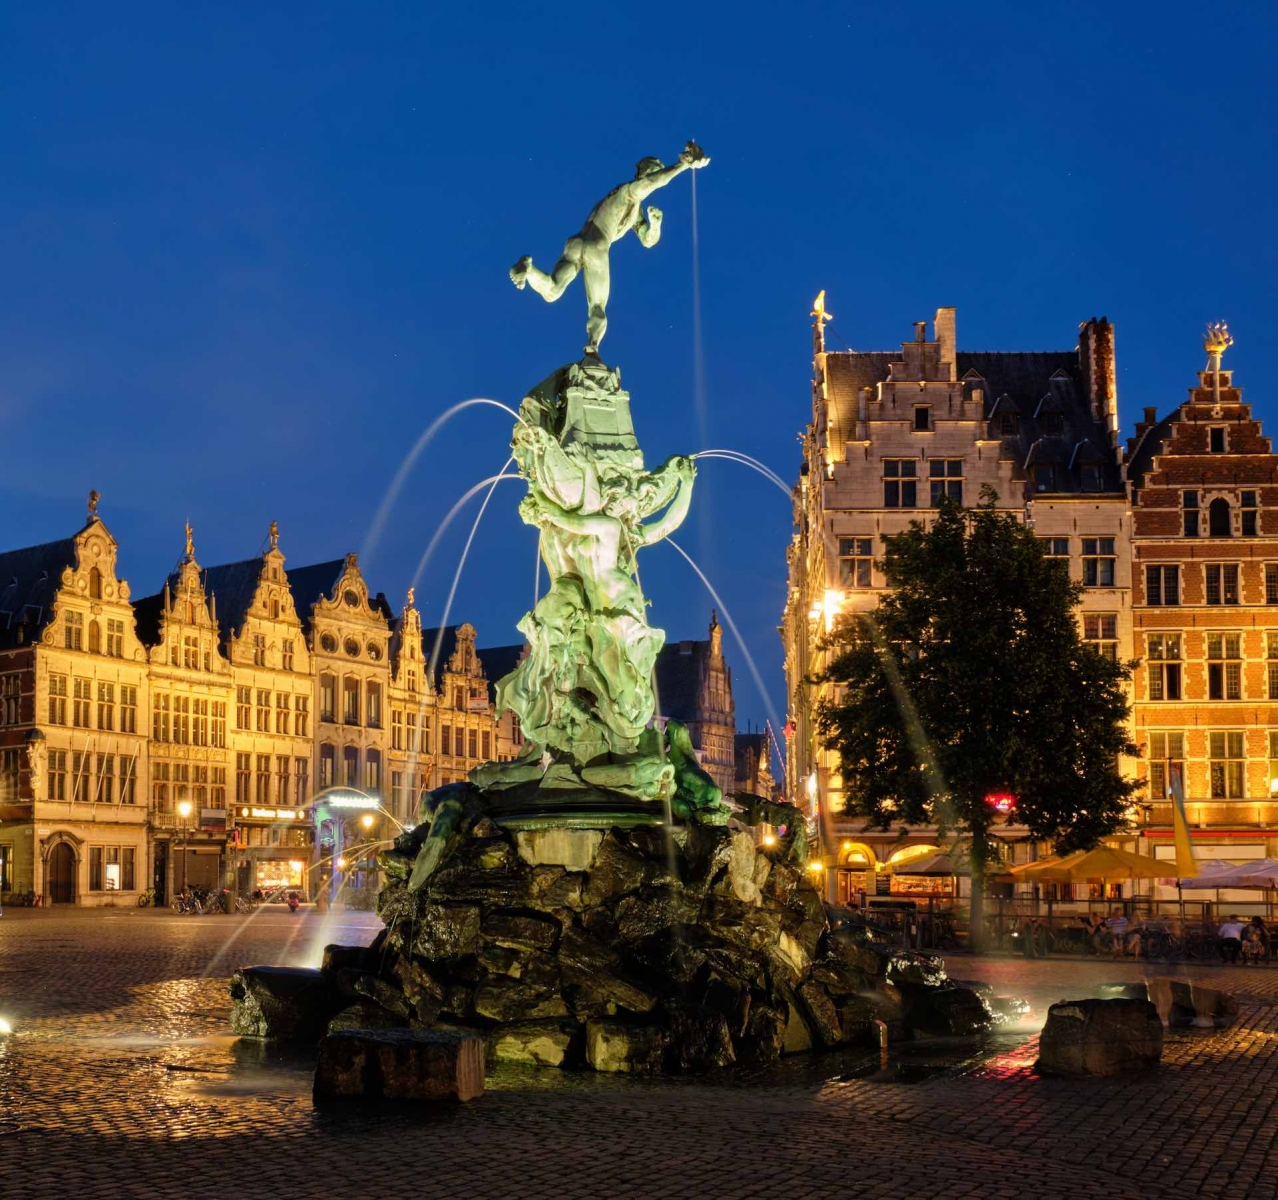 Antwerpen Grote Markt mit berühmter Brabo-Statue und Brunnen bei Nacht, Belgien